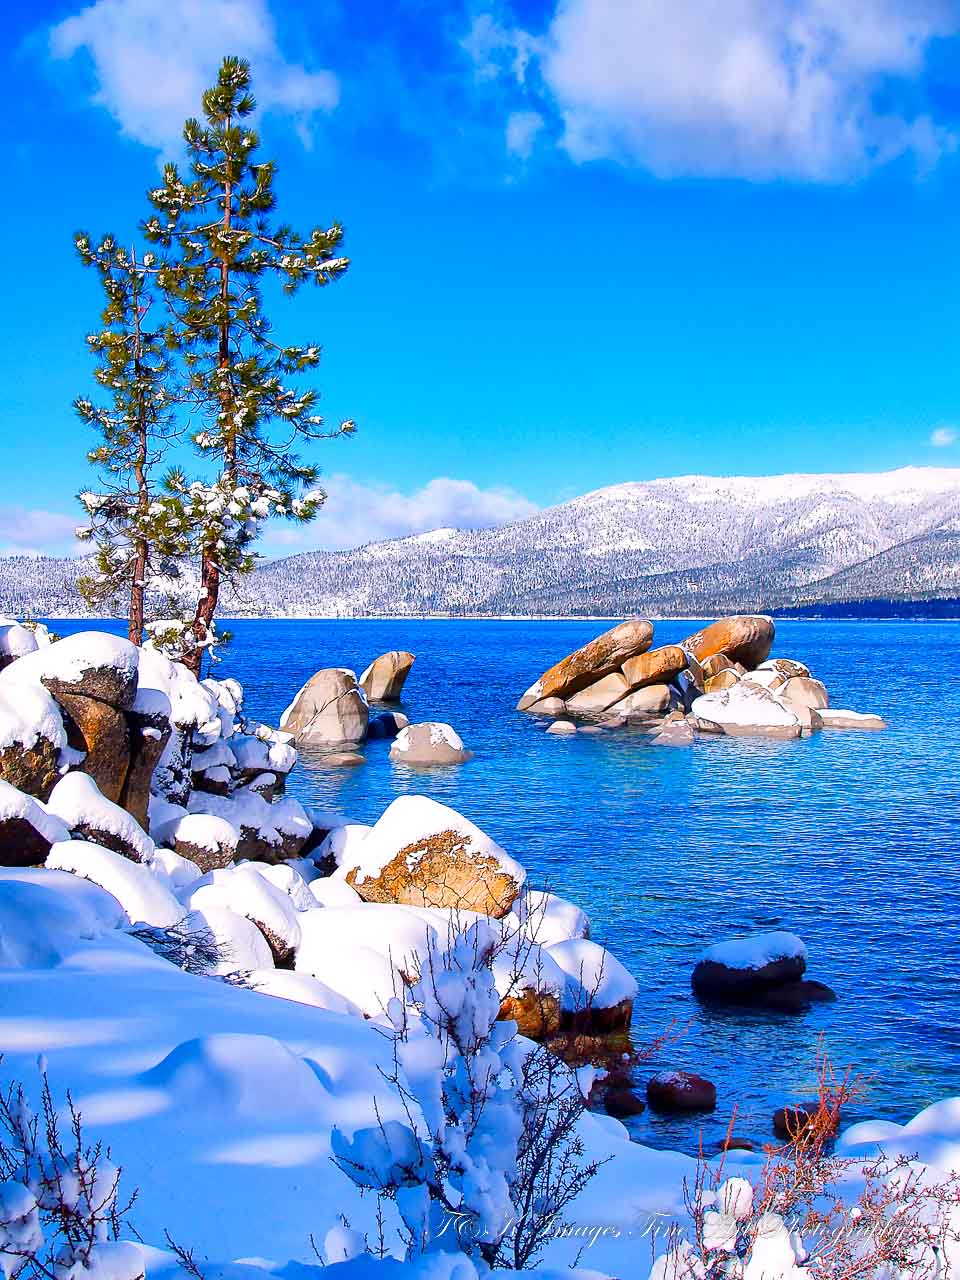 Blue and White - Lake Tahoe California